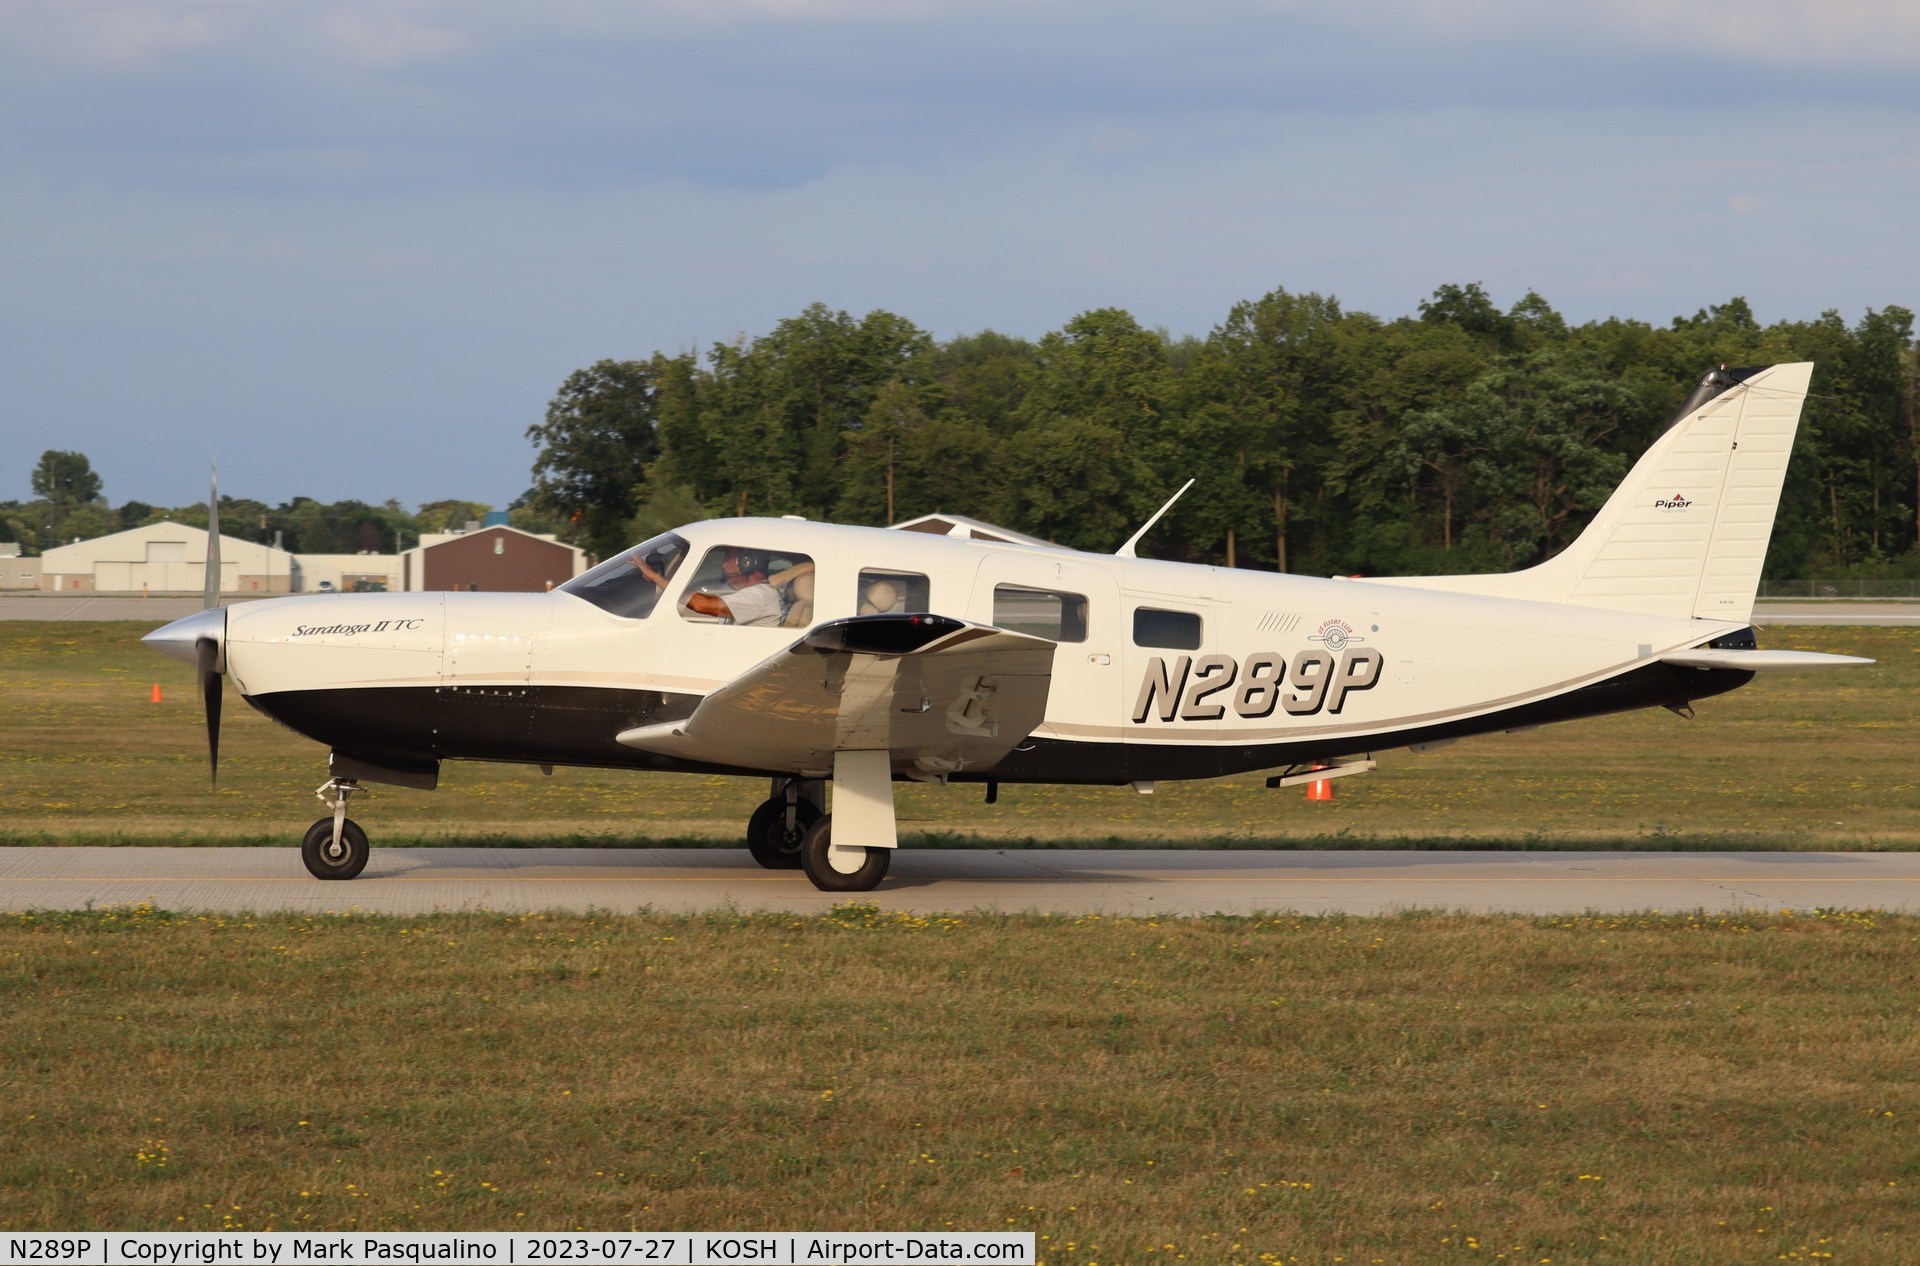 N289P, 2007 Piper PA-32R-301T Turbo Saratoga C/N 3257444, Piper PA-32R-301T